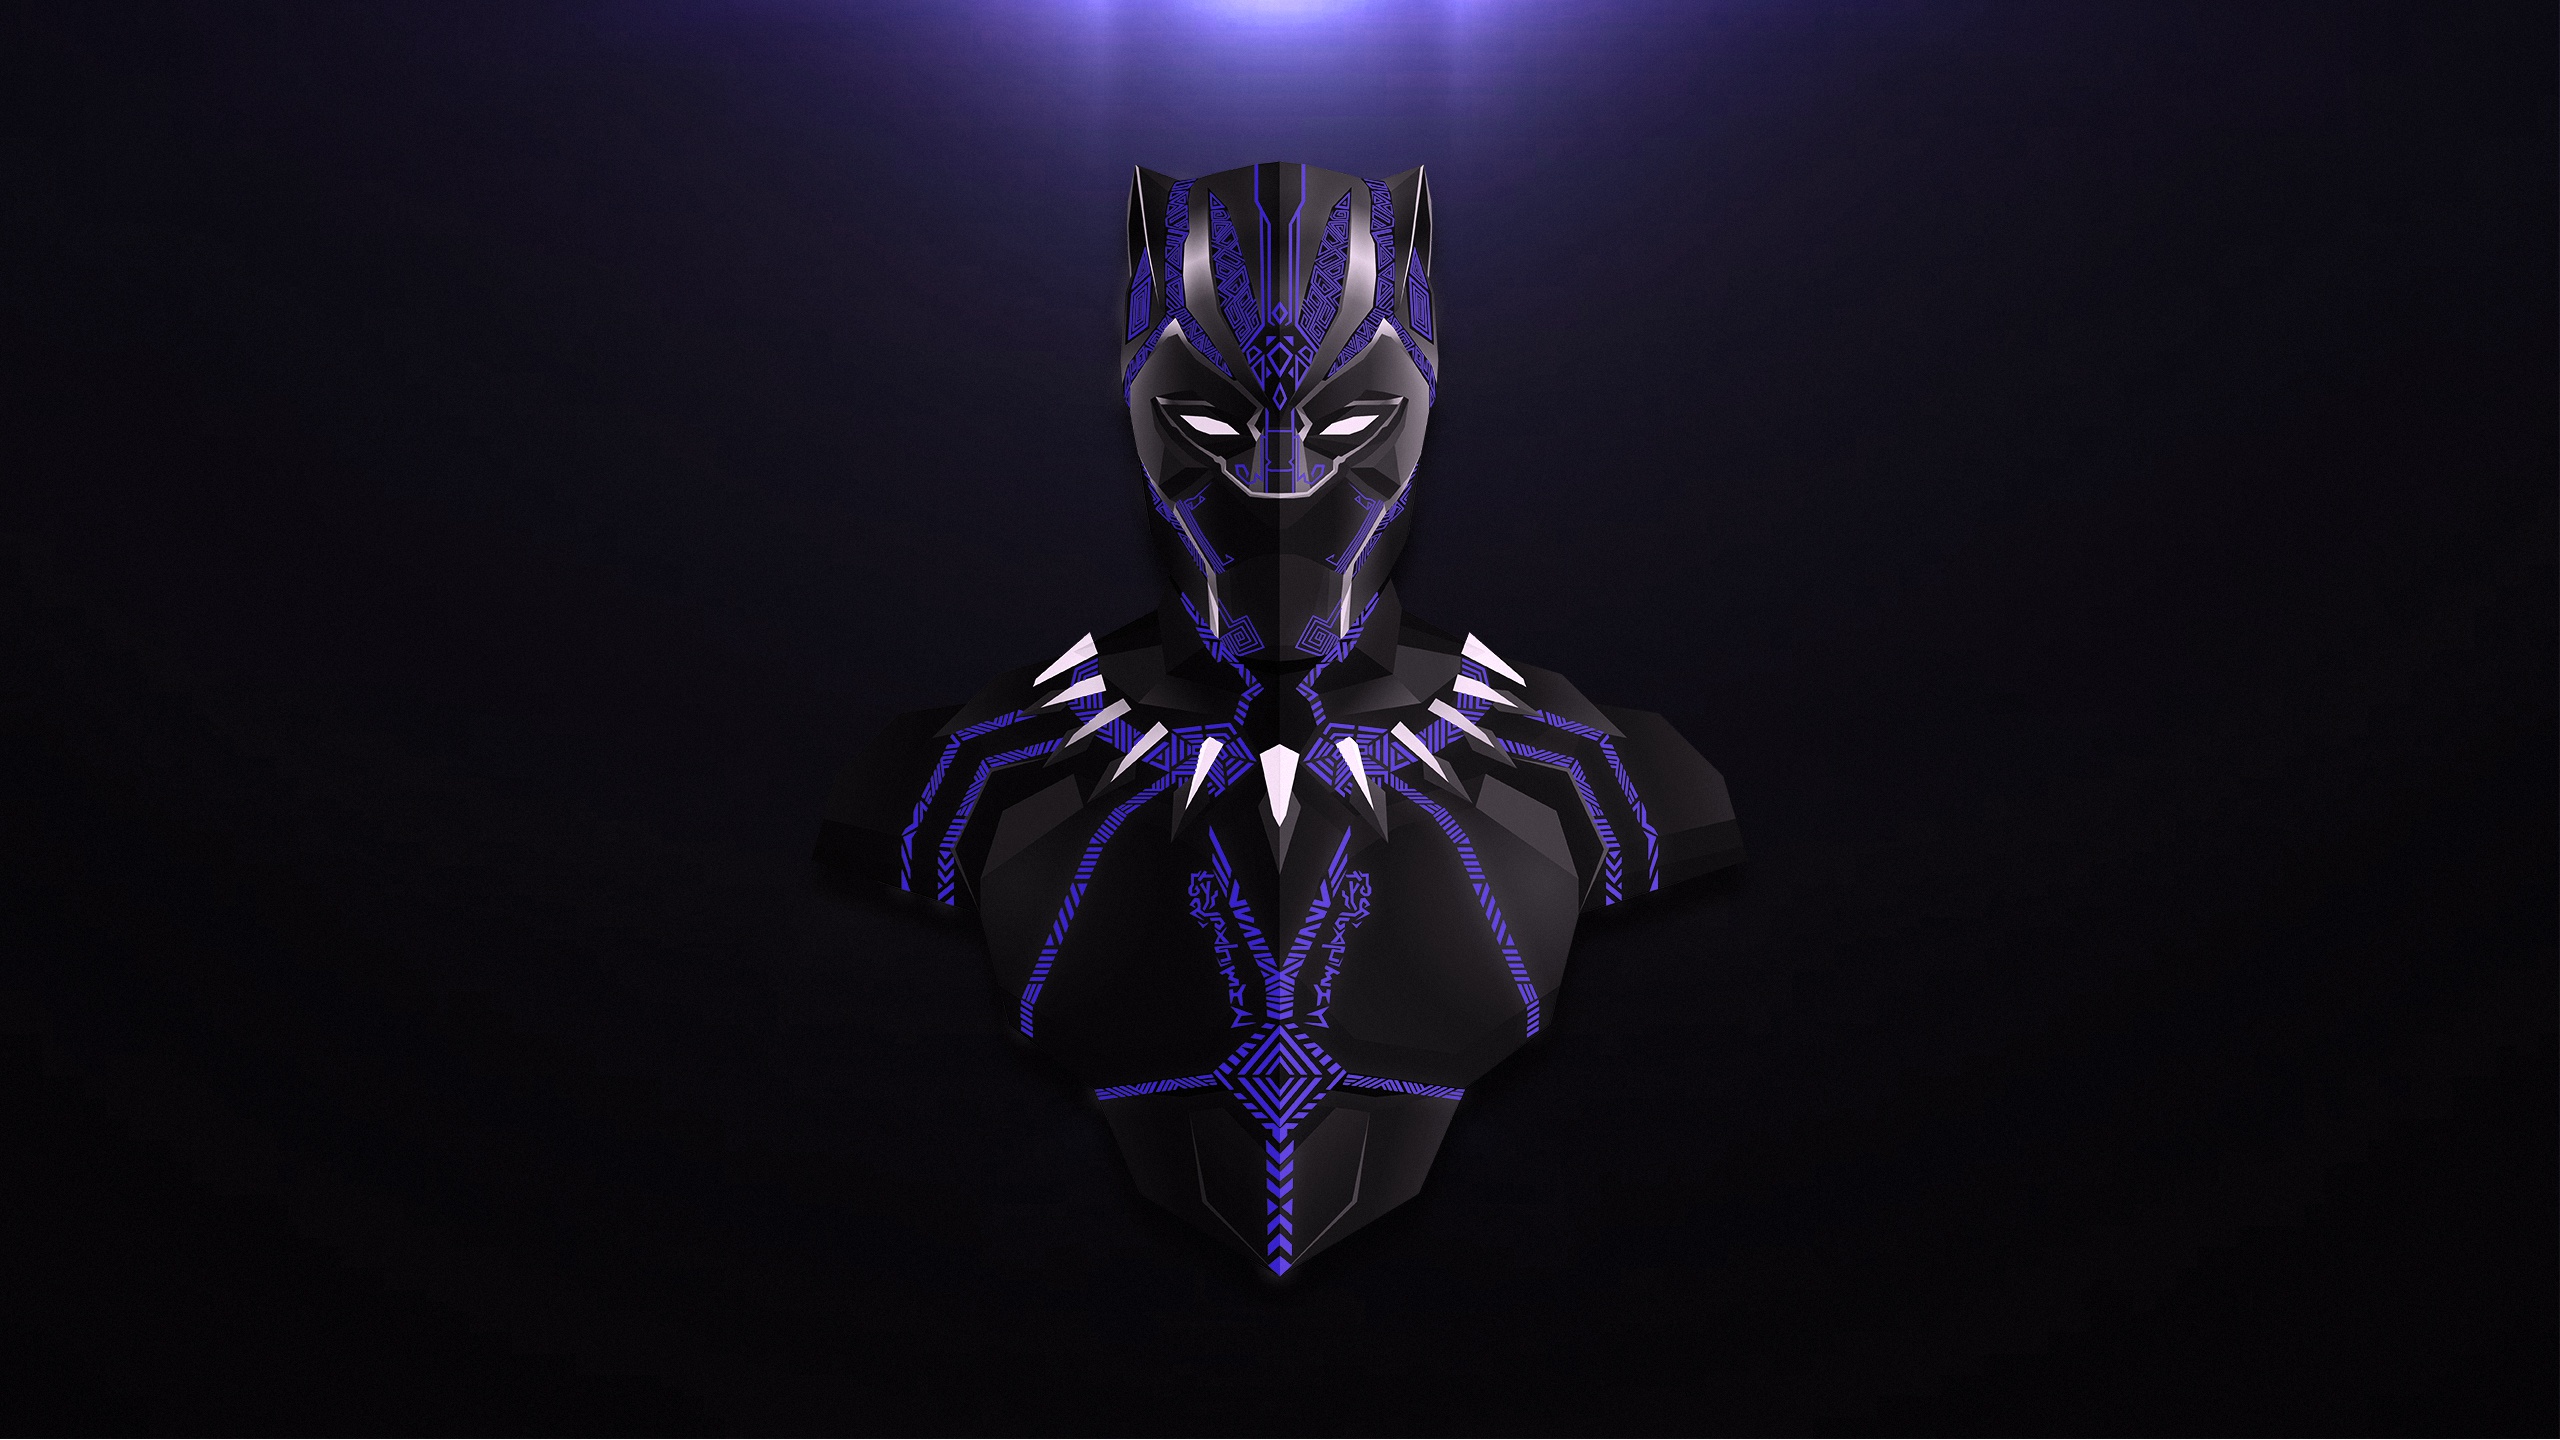 black panther marvel fondo de pantalla hd,púrpura,oscuridad,personaje de ficción,hombre murciélago,animación